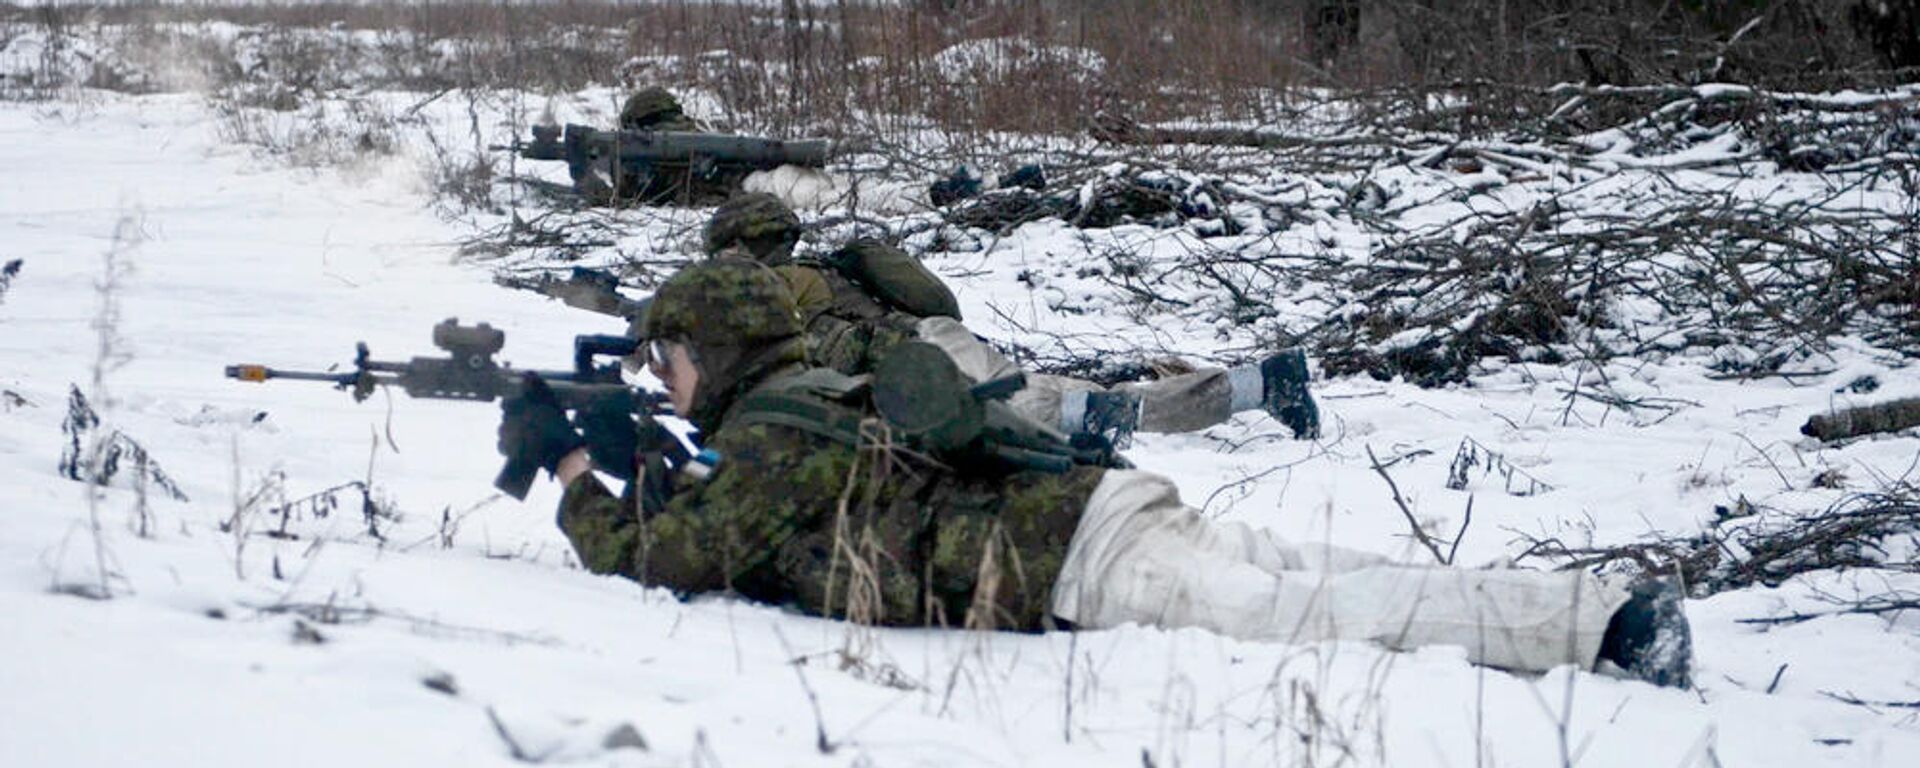 Эстонские военнослужащие во время учений на полигоне Тапа, 16 февраля 2016 года  - Sputnik Латвия, 1920, 30.12.2021